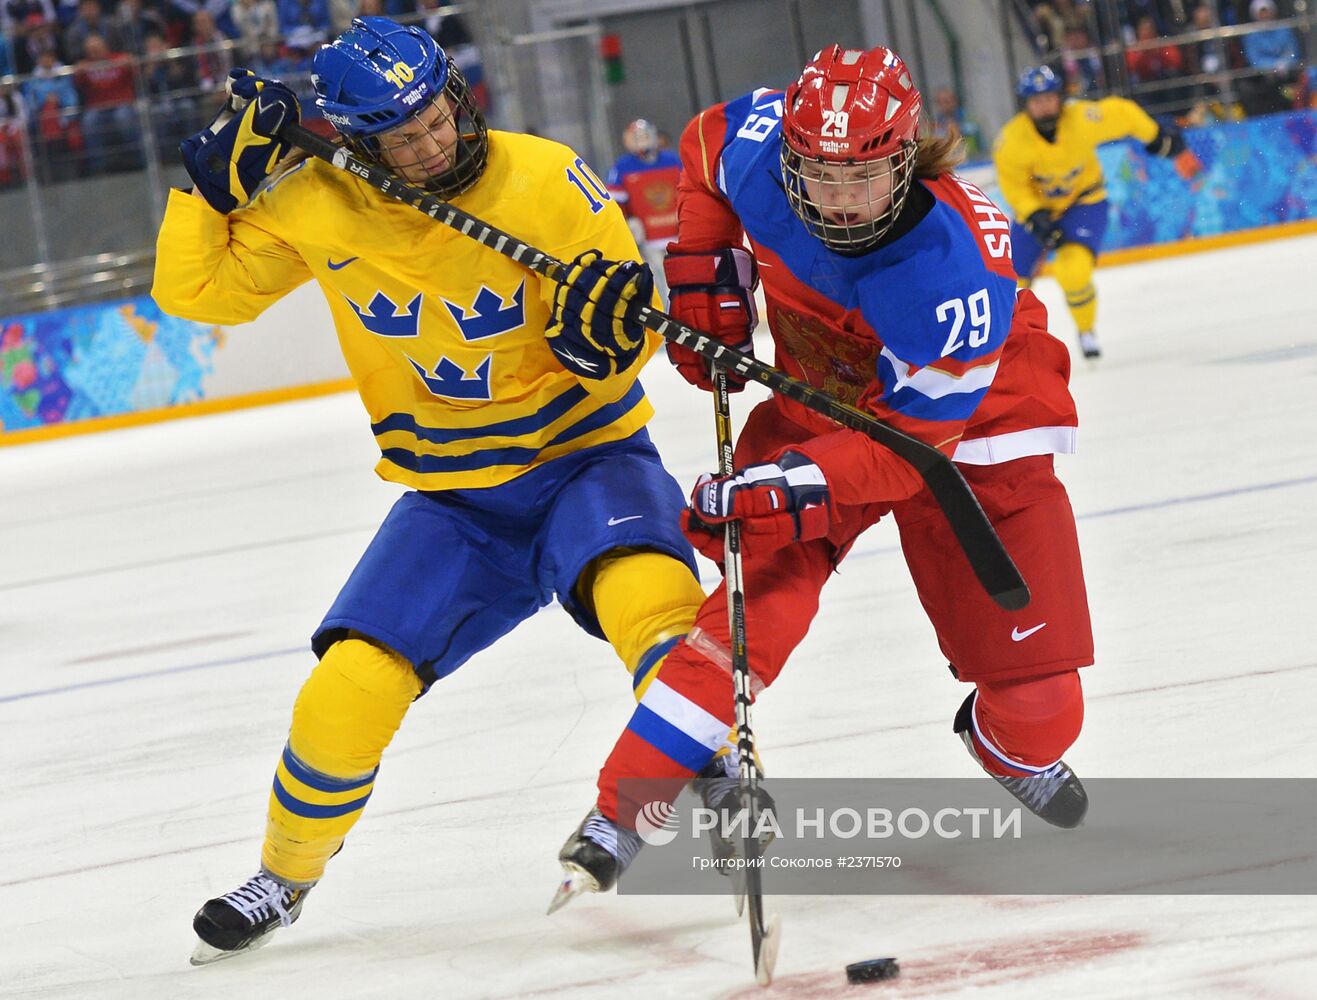 Олимпиада 2014. Хоккей. Женщины. Швеция - Россия